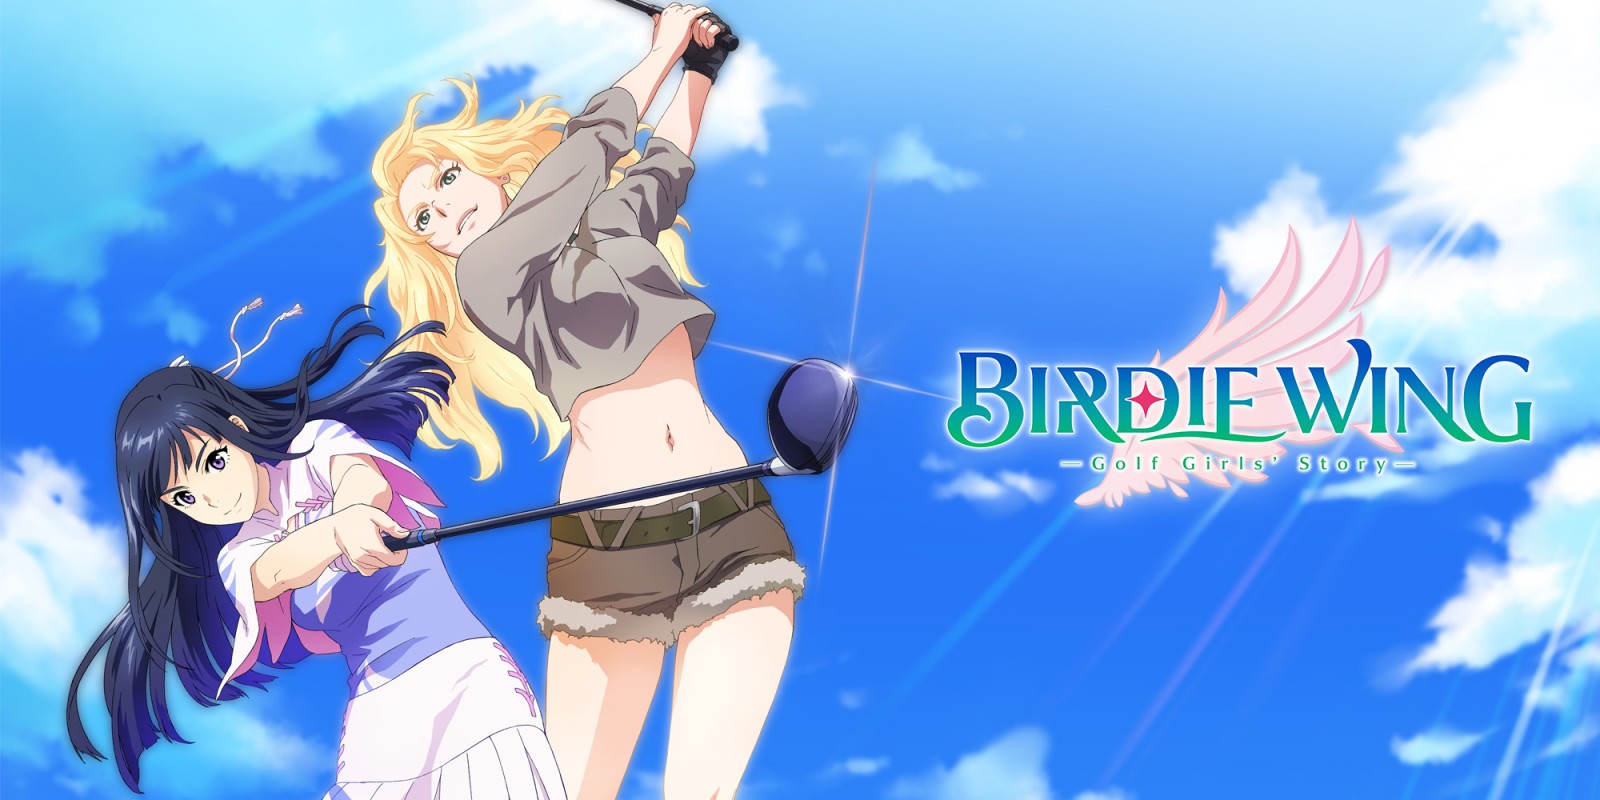 《小鸟之翼》改编游戏将于6月15日登陆Nintendo Switch平台